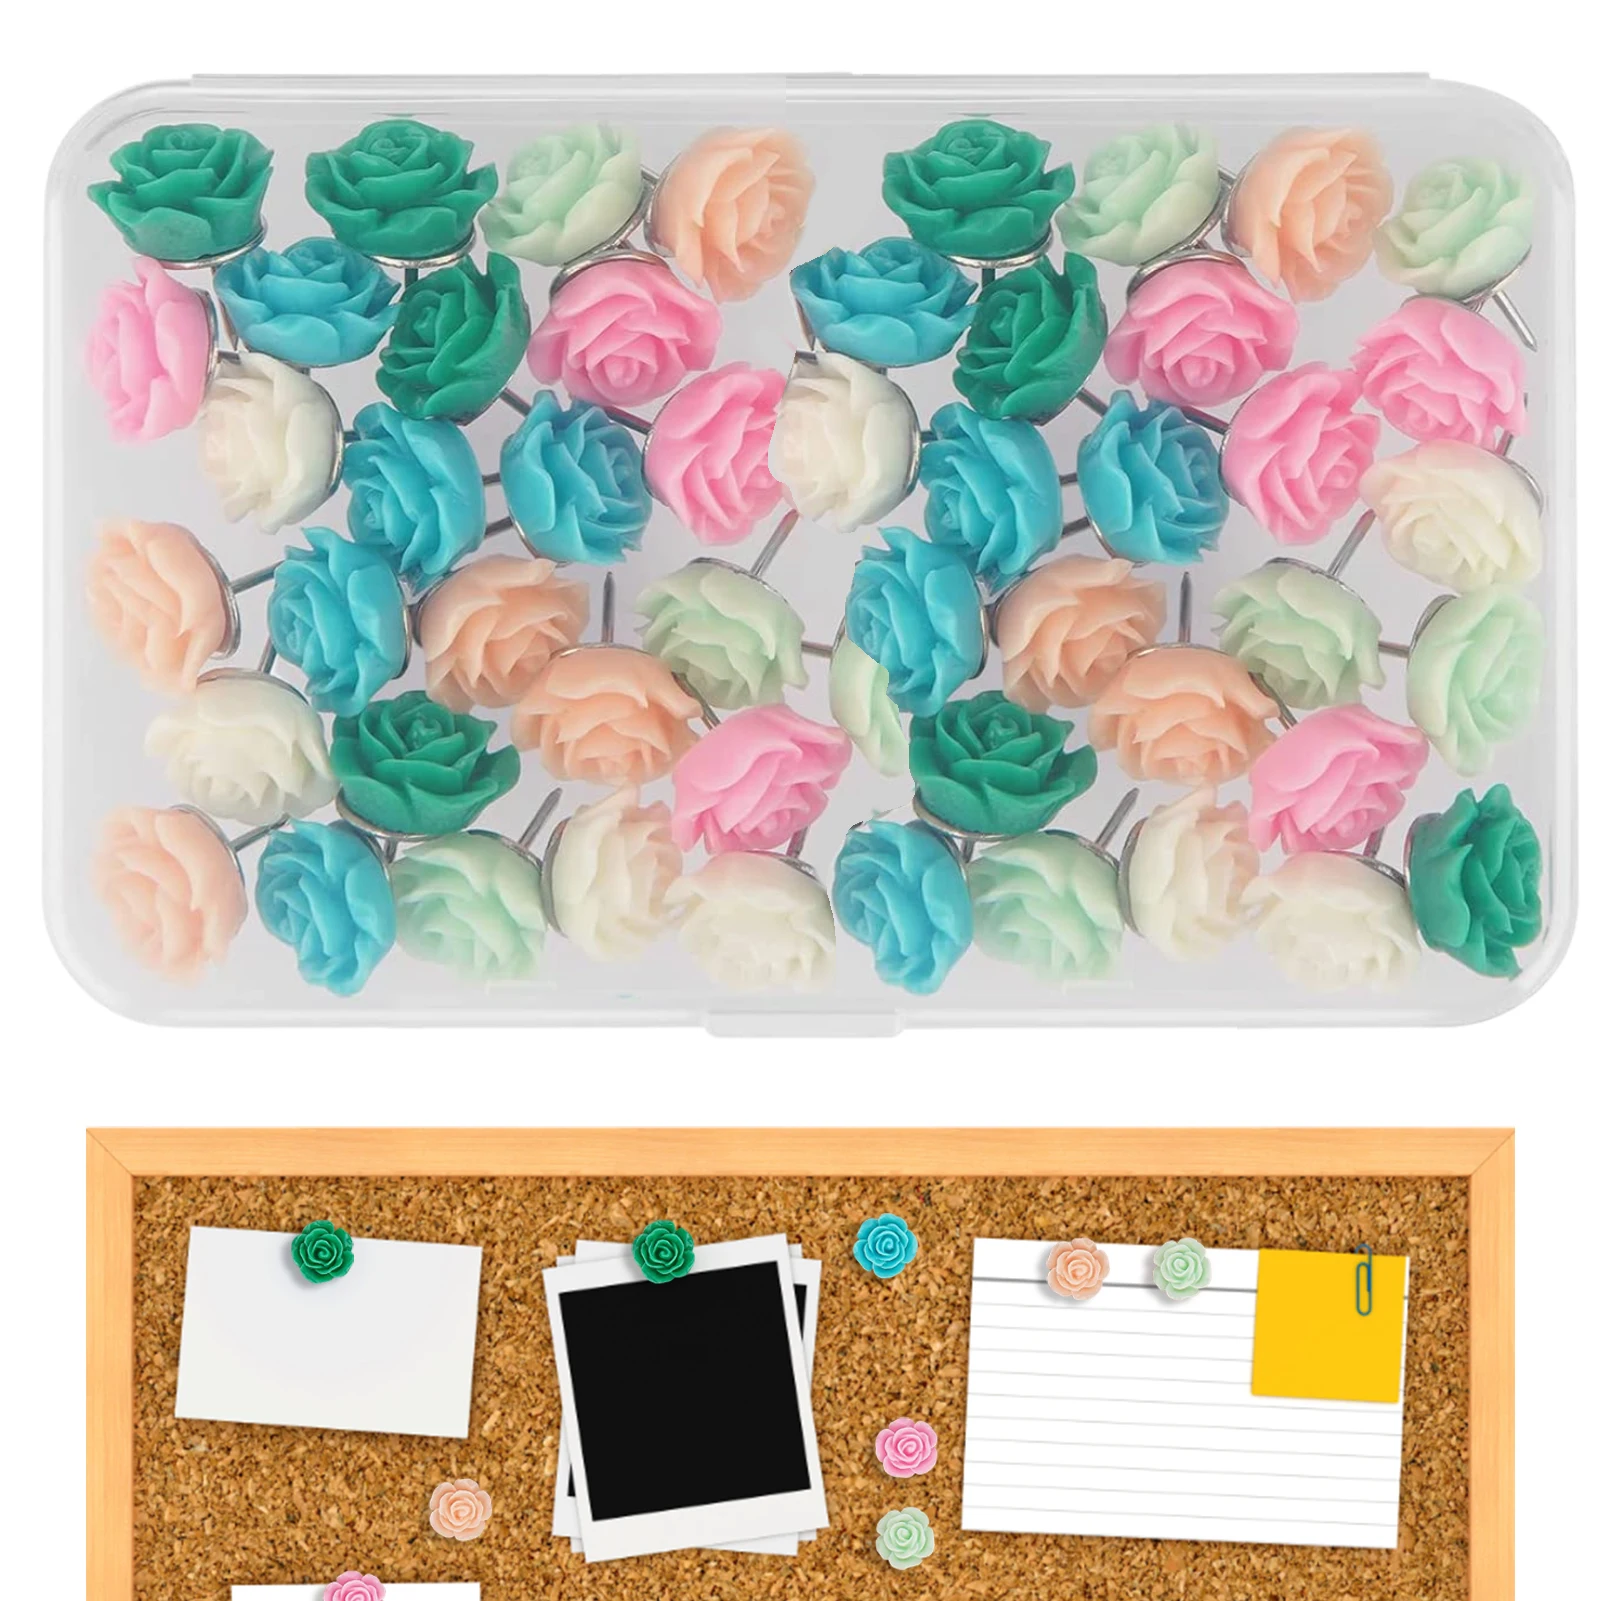 

Цветочные булавки в форме розы цветные Цветные булавки для пробковой доски милые заколки для больших пальцев для офиса школы и личного поль...